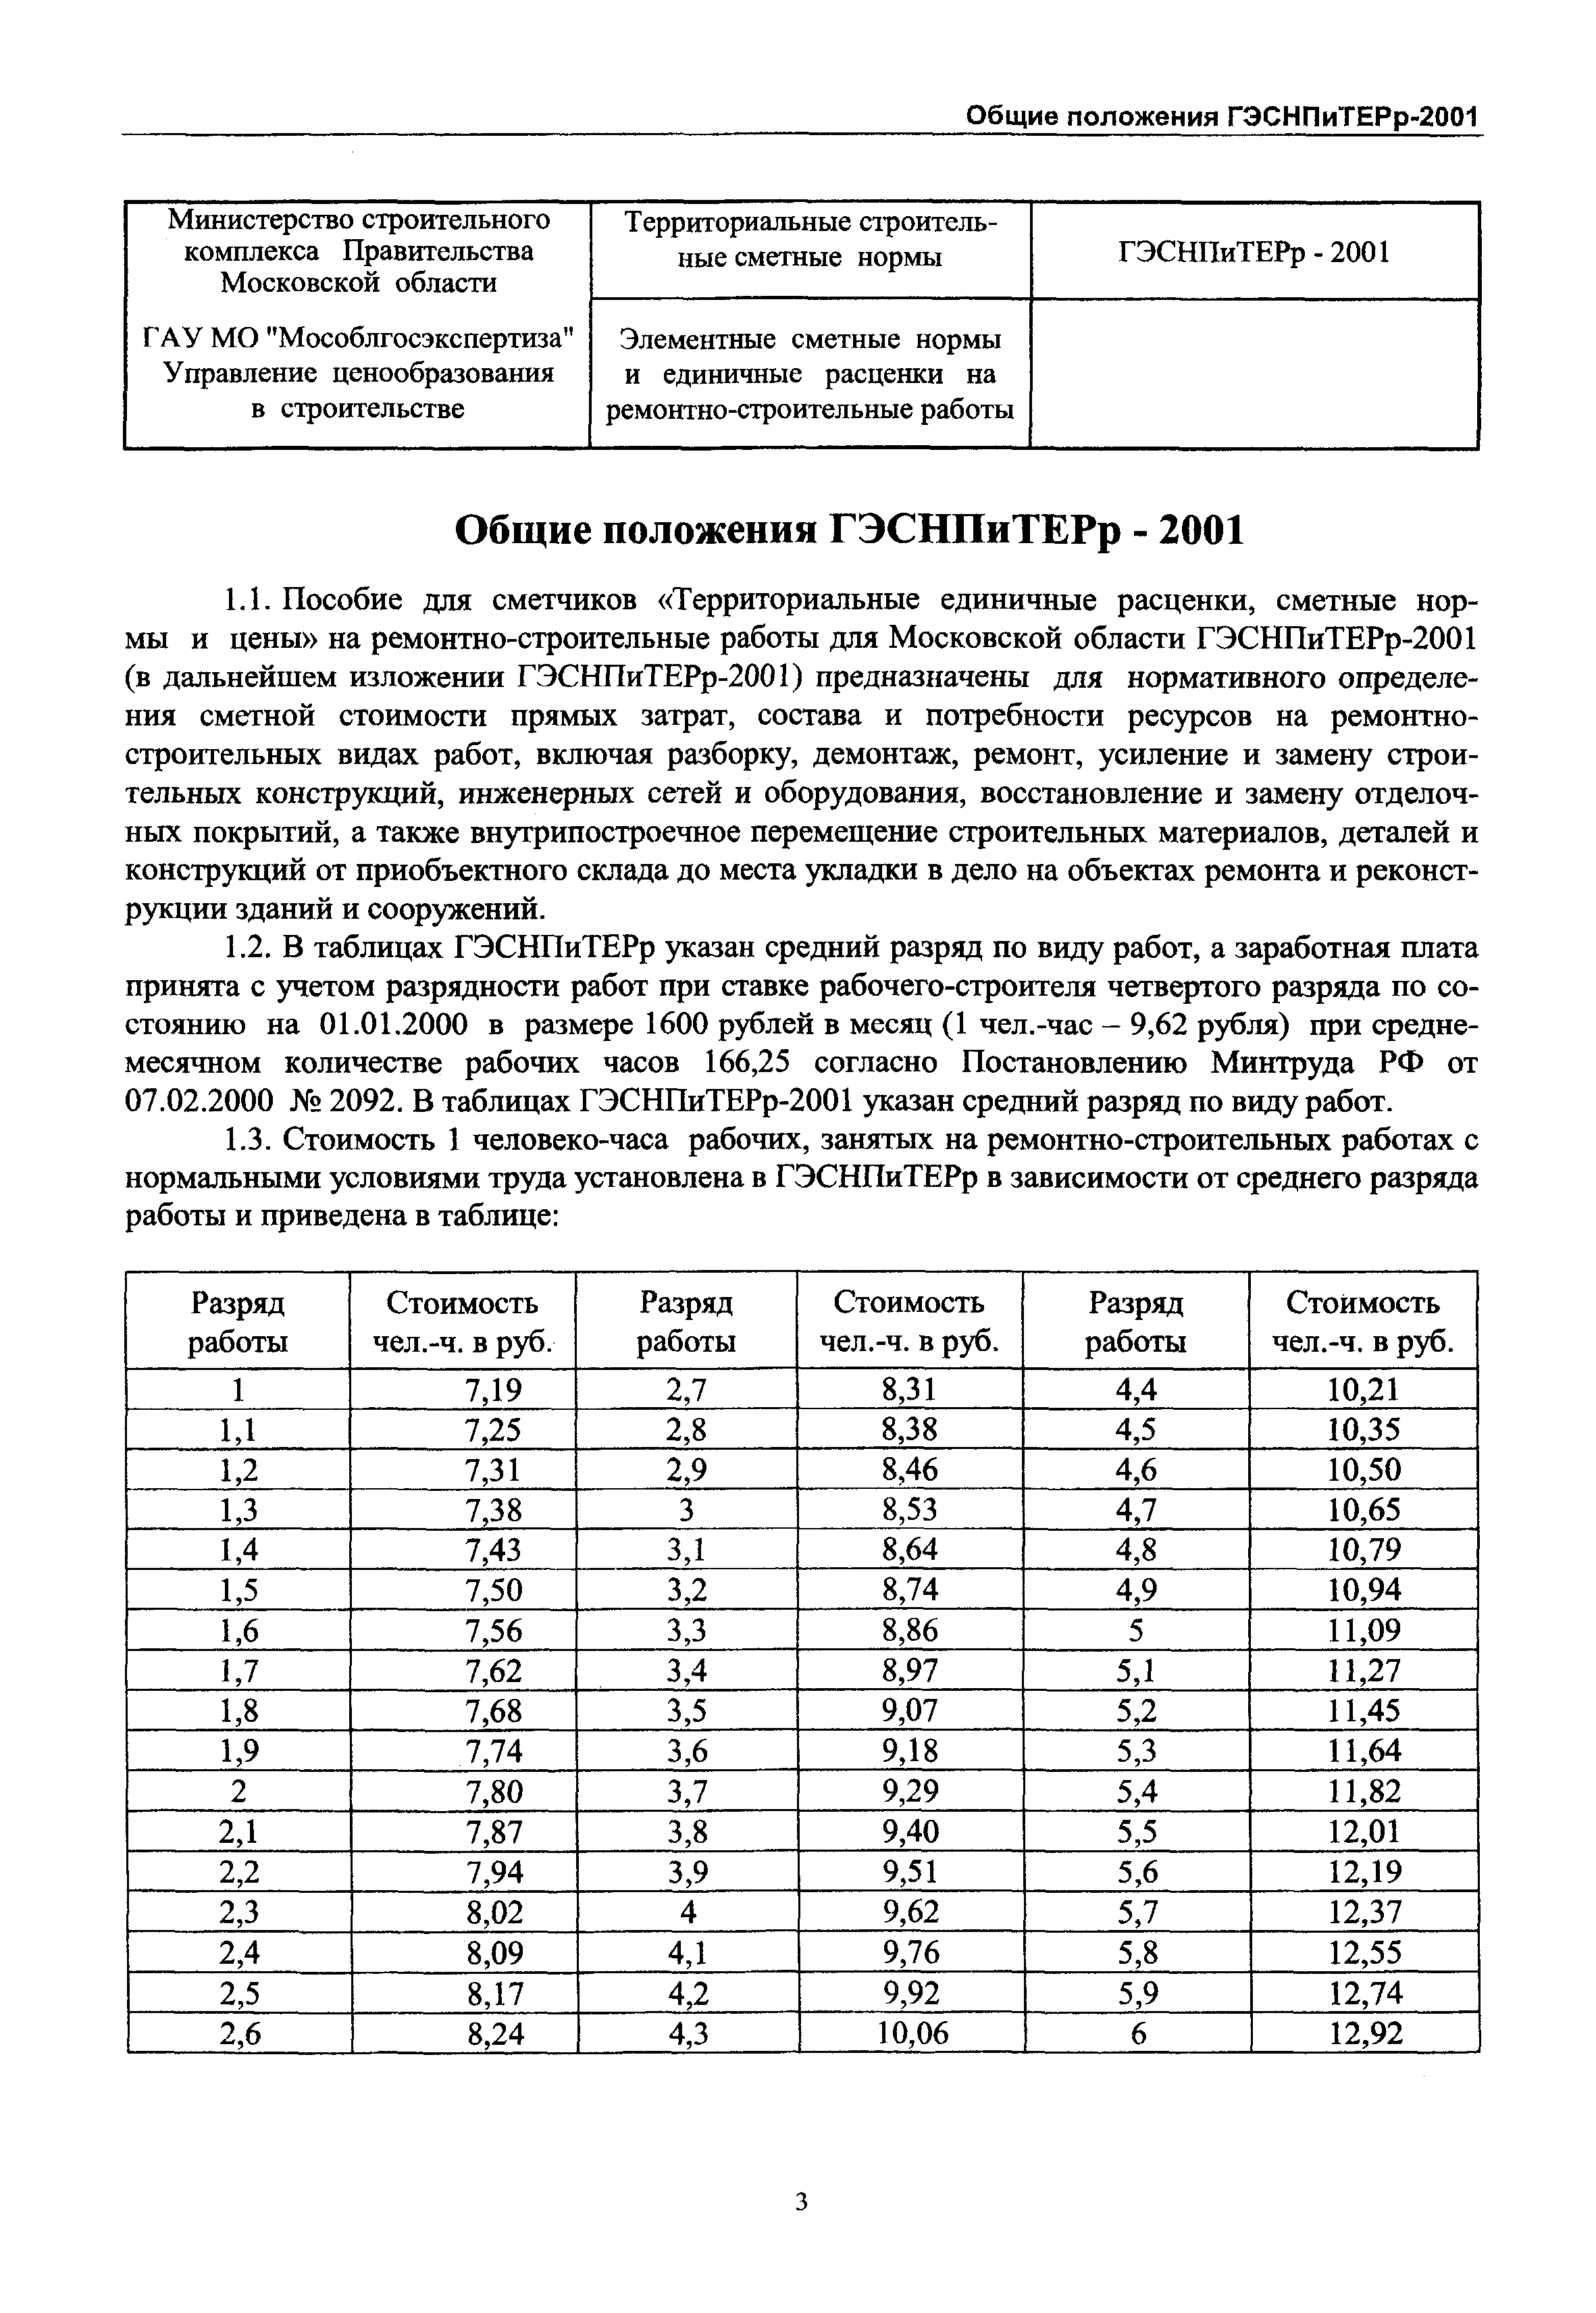 ГЭСНПиТЕРр 2001-54 Московской области